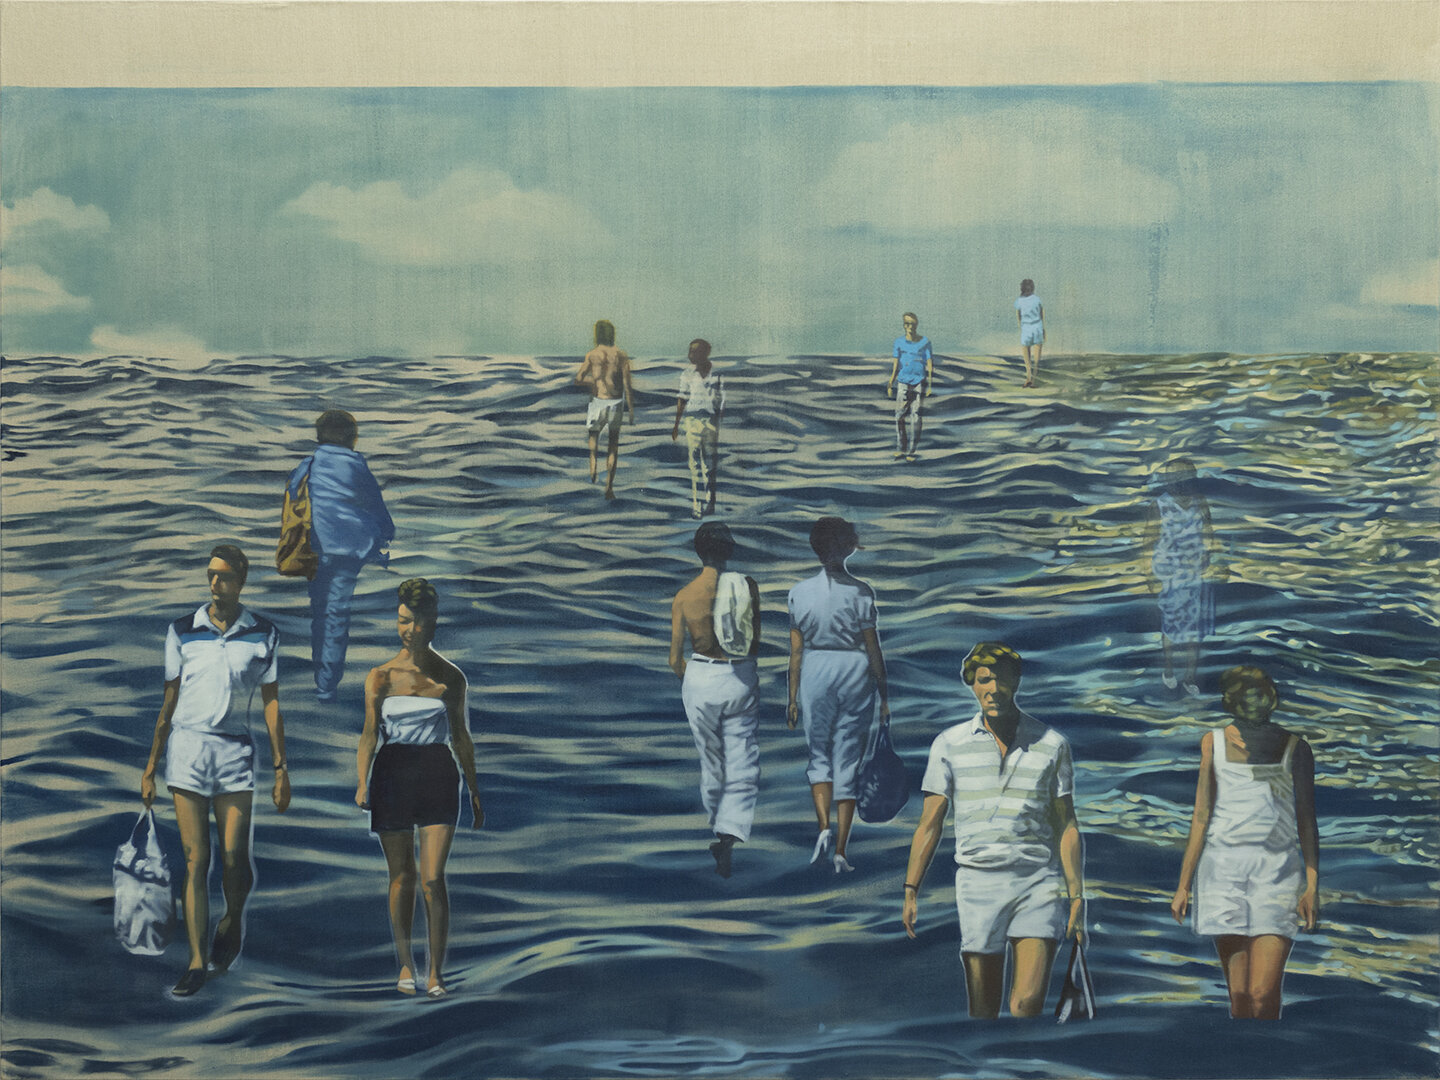 Aquaboulevard. Oil on canvas. 150 x 200 cm. 2021